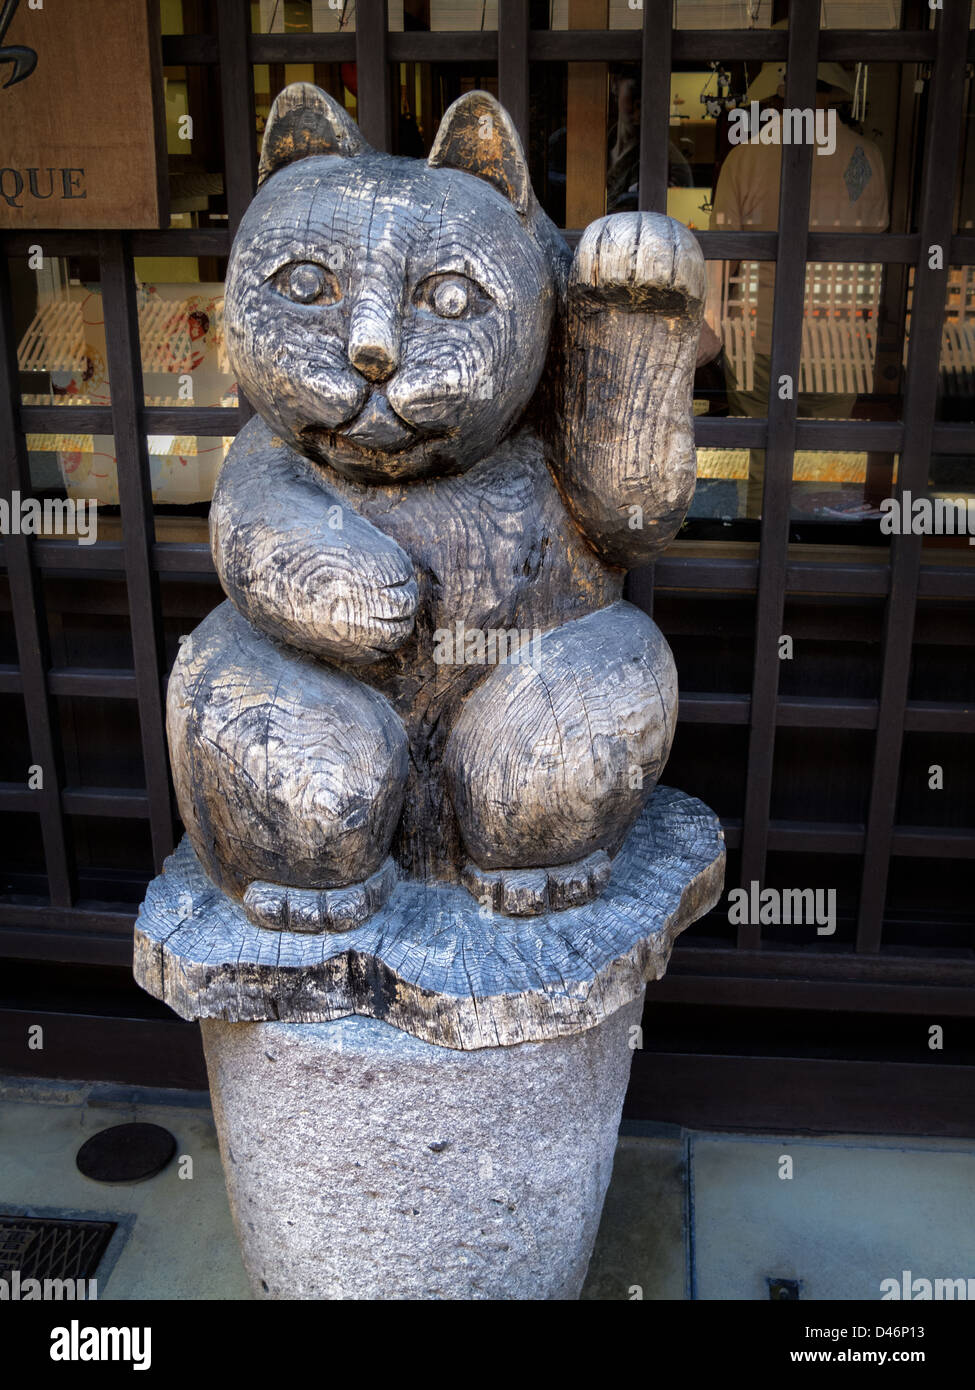 Maneki neko en bois ('signe cat'), courant à l'extérieur des magasins et à l'intérieur d'entreprises au Japon. Il apporte la bonne chance et prospérité. Banque D'Images